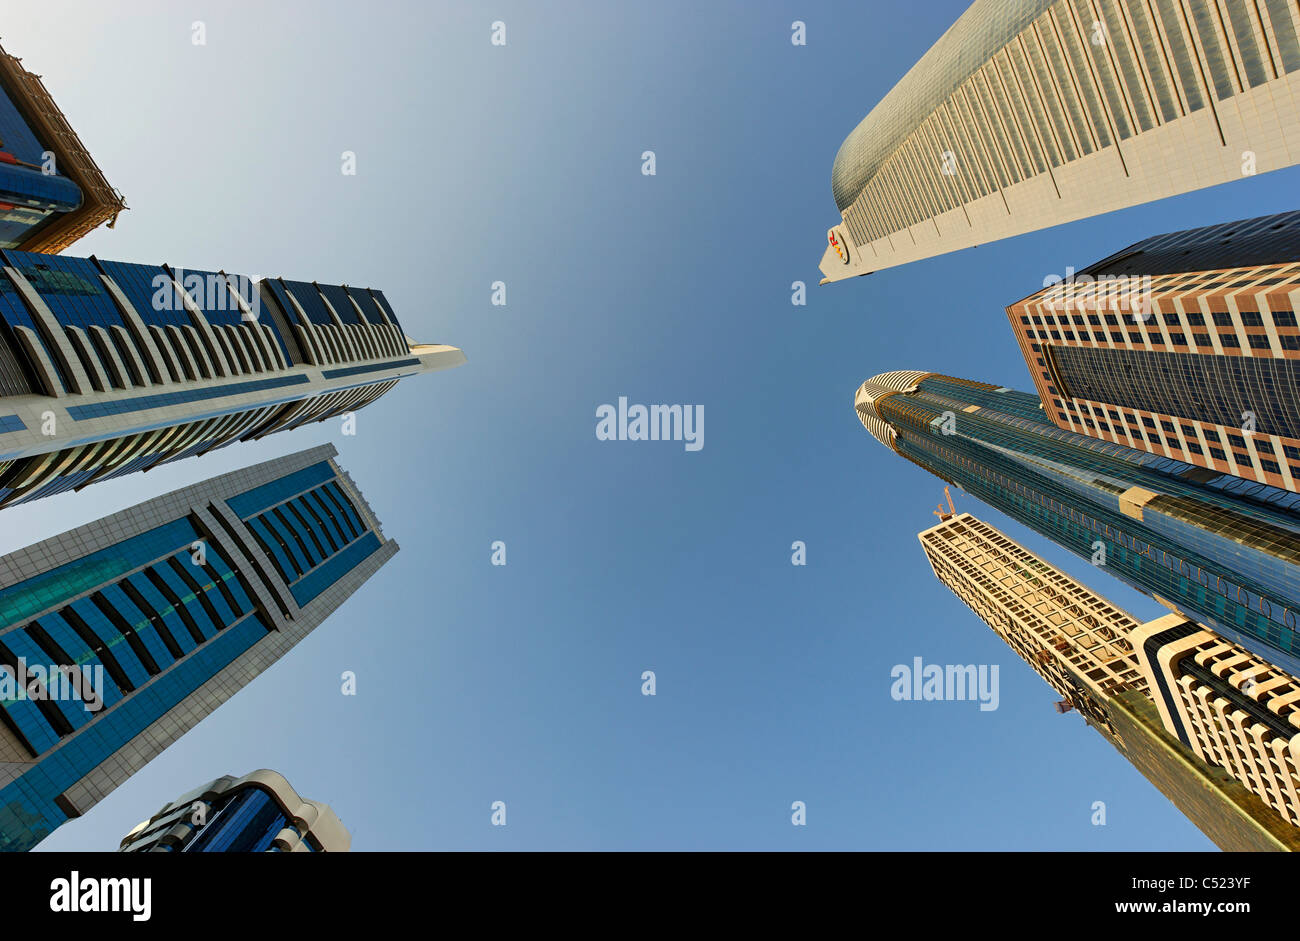 Tours, gratte-ciel, d'hôtels, l'architecture moderne, Sheikh Zayed Road, du quartier financier, Dubaï, Émirats Arabes Unis Banque D'Images